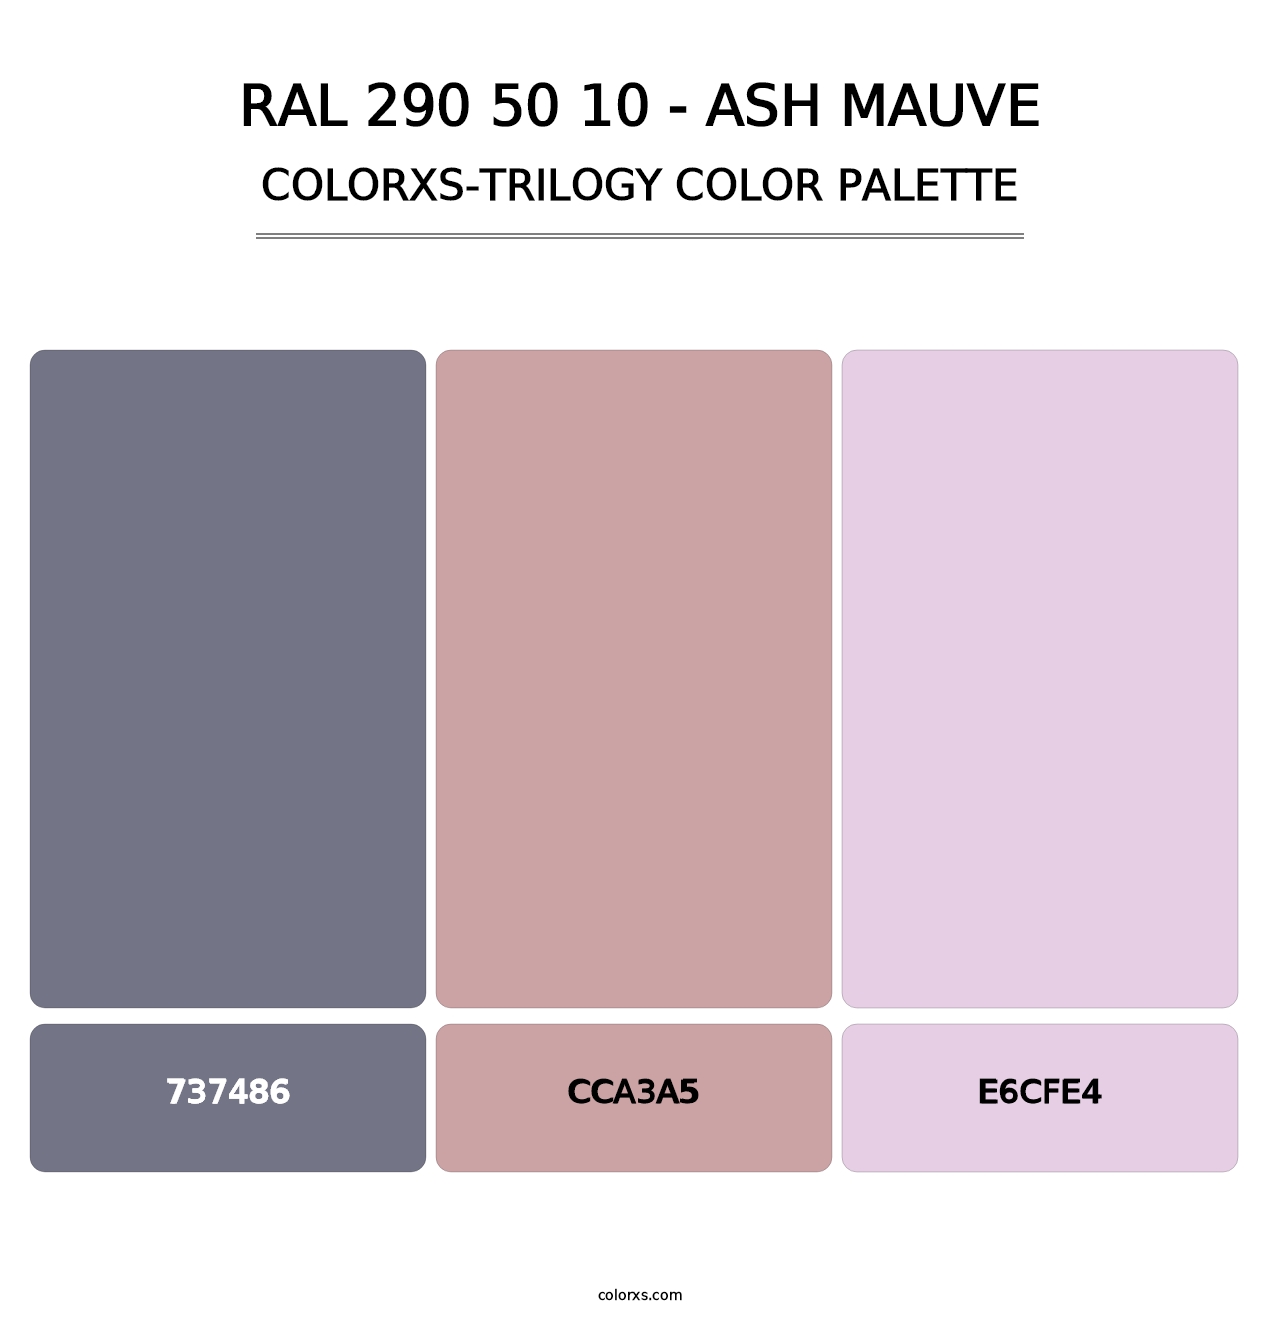 RAL 290 50 10 - Ash Mauve - Colorxs Trilogy Palette